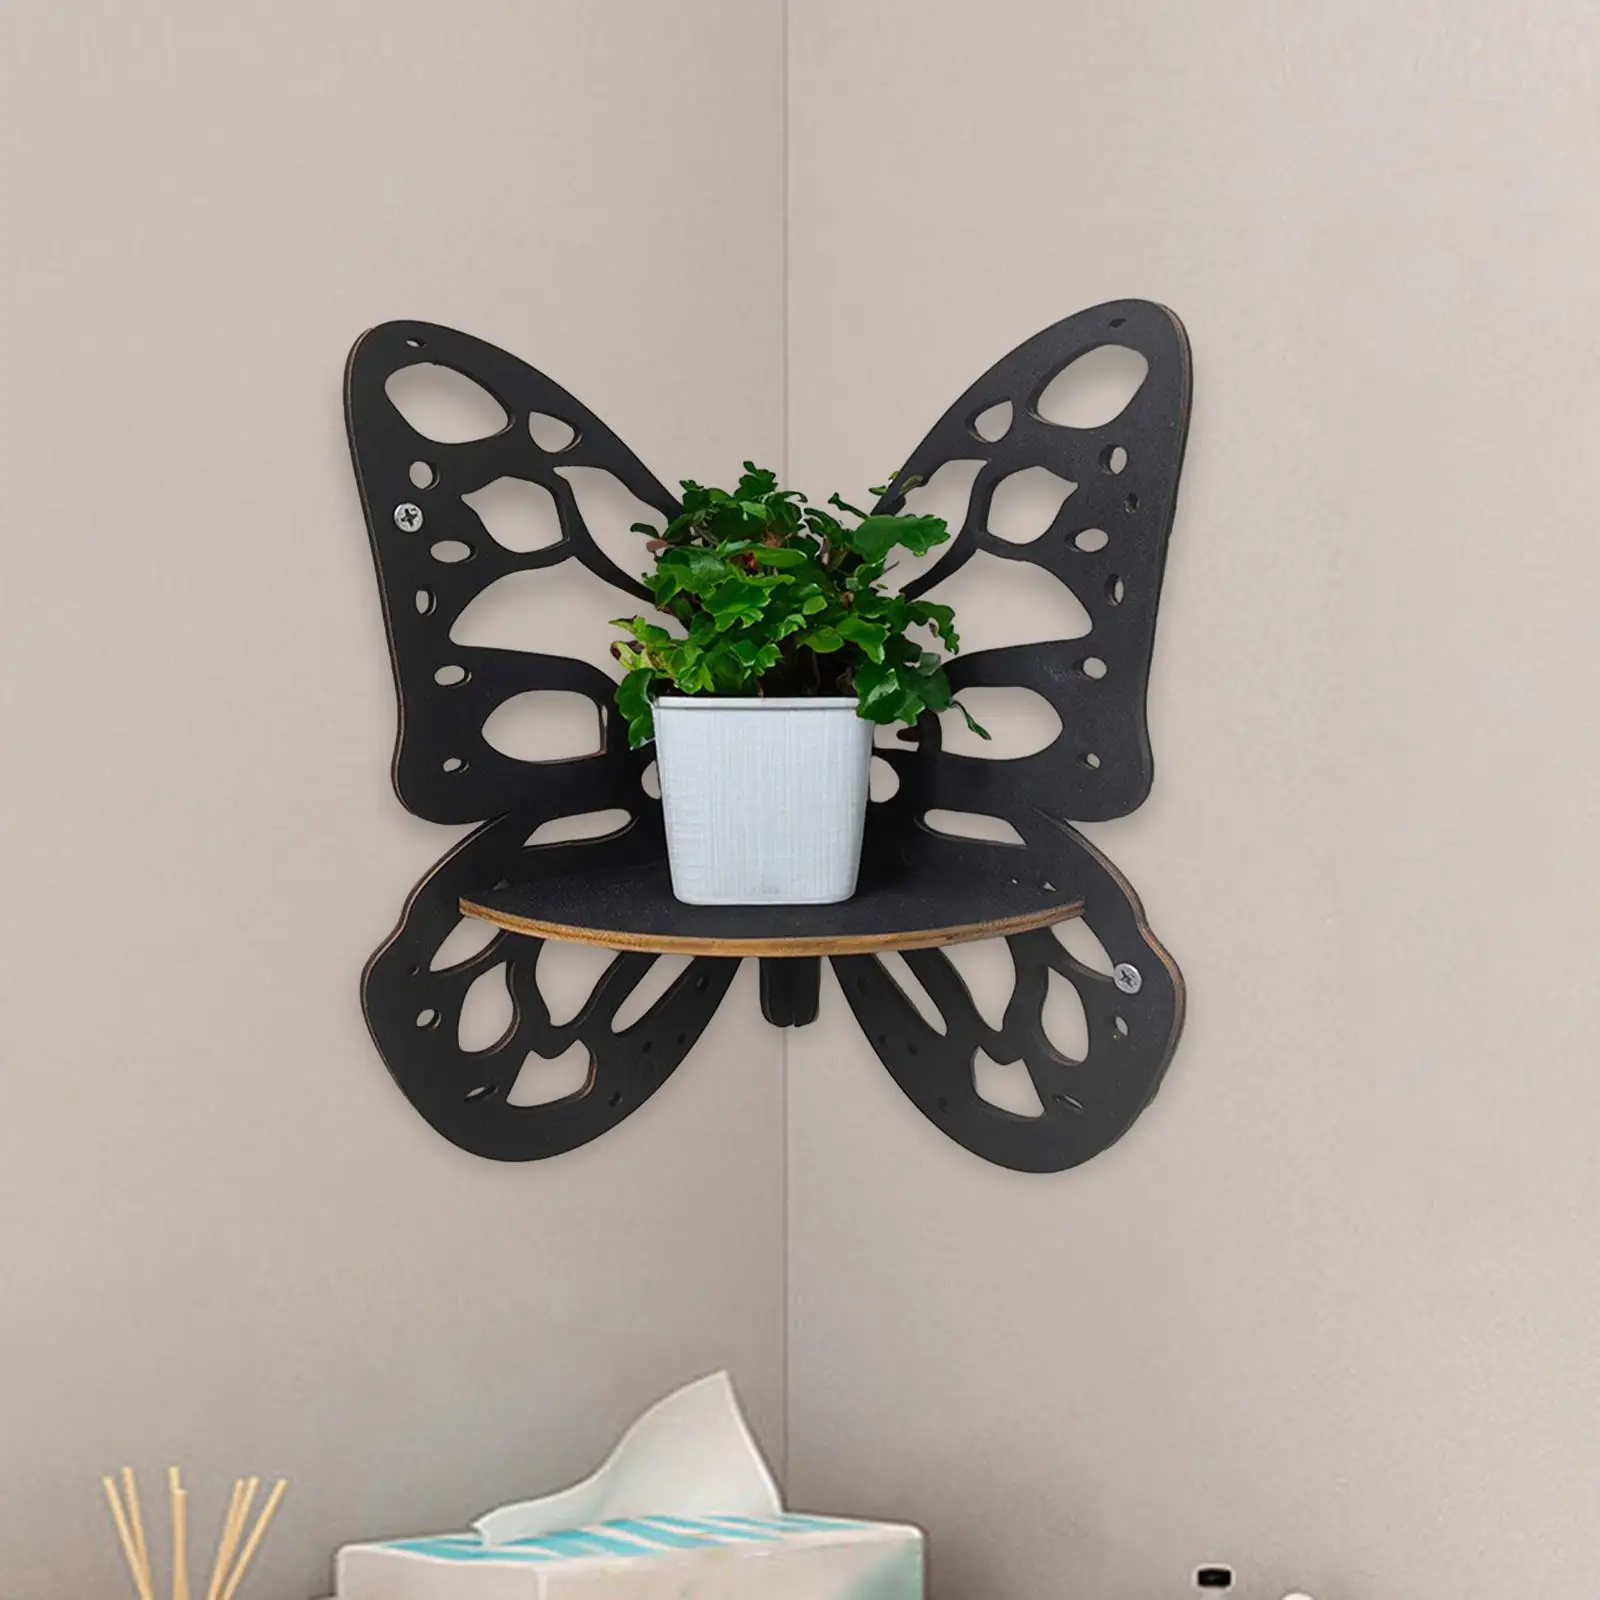 Butterfly Corner Shelf Wooden Floating Shelves for Bedroom Office Bathroom